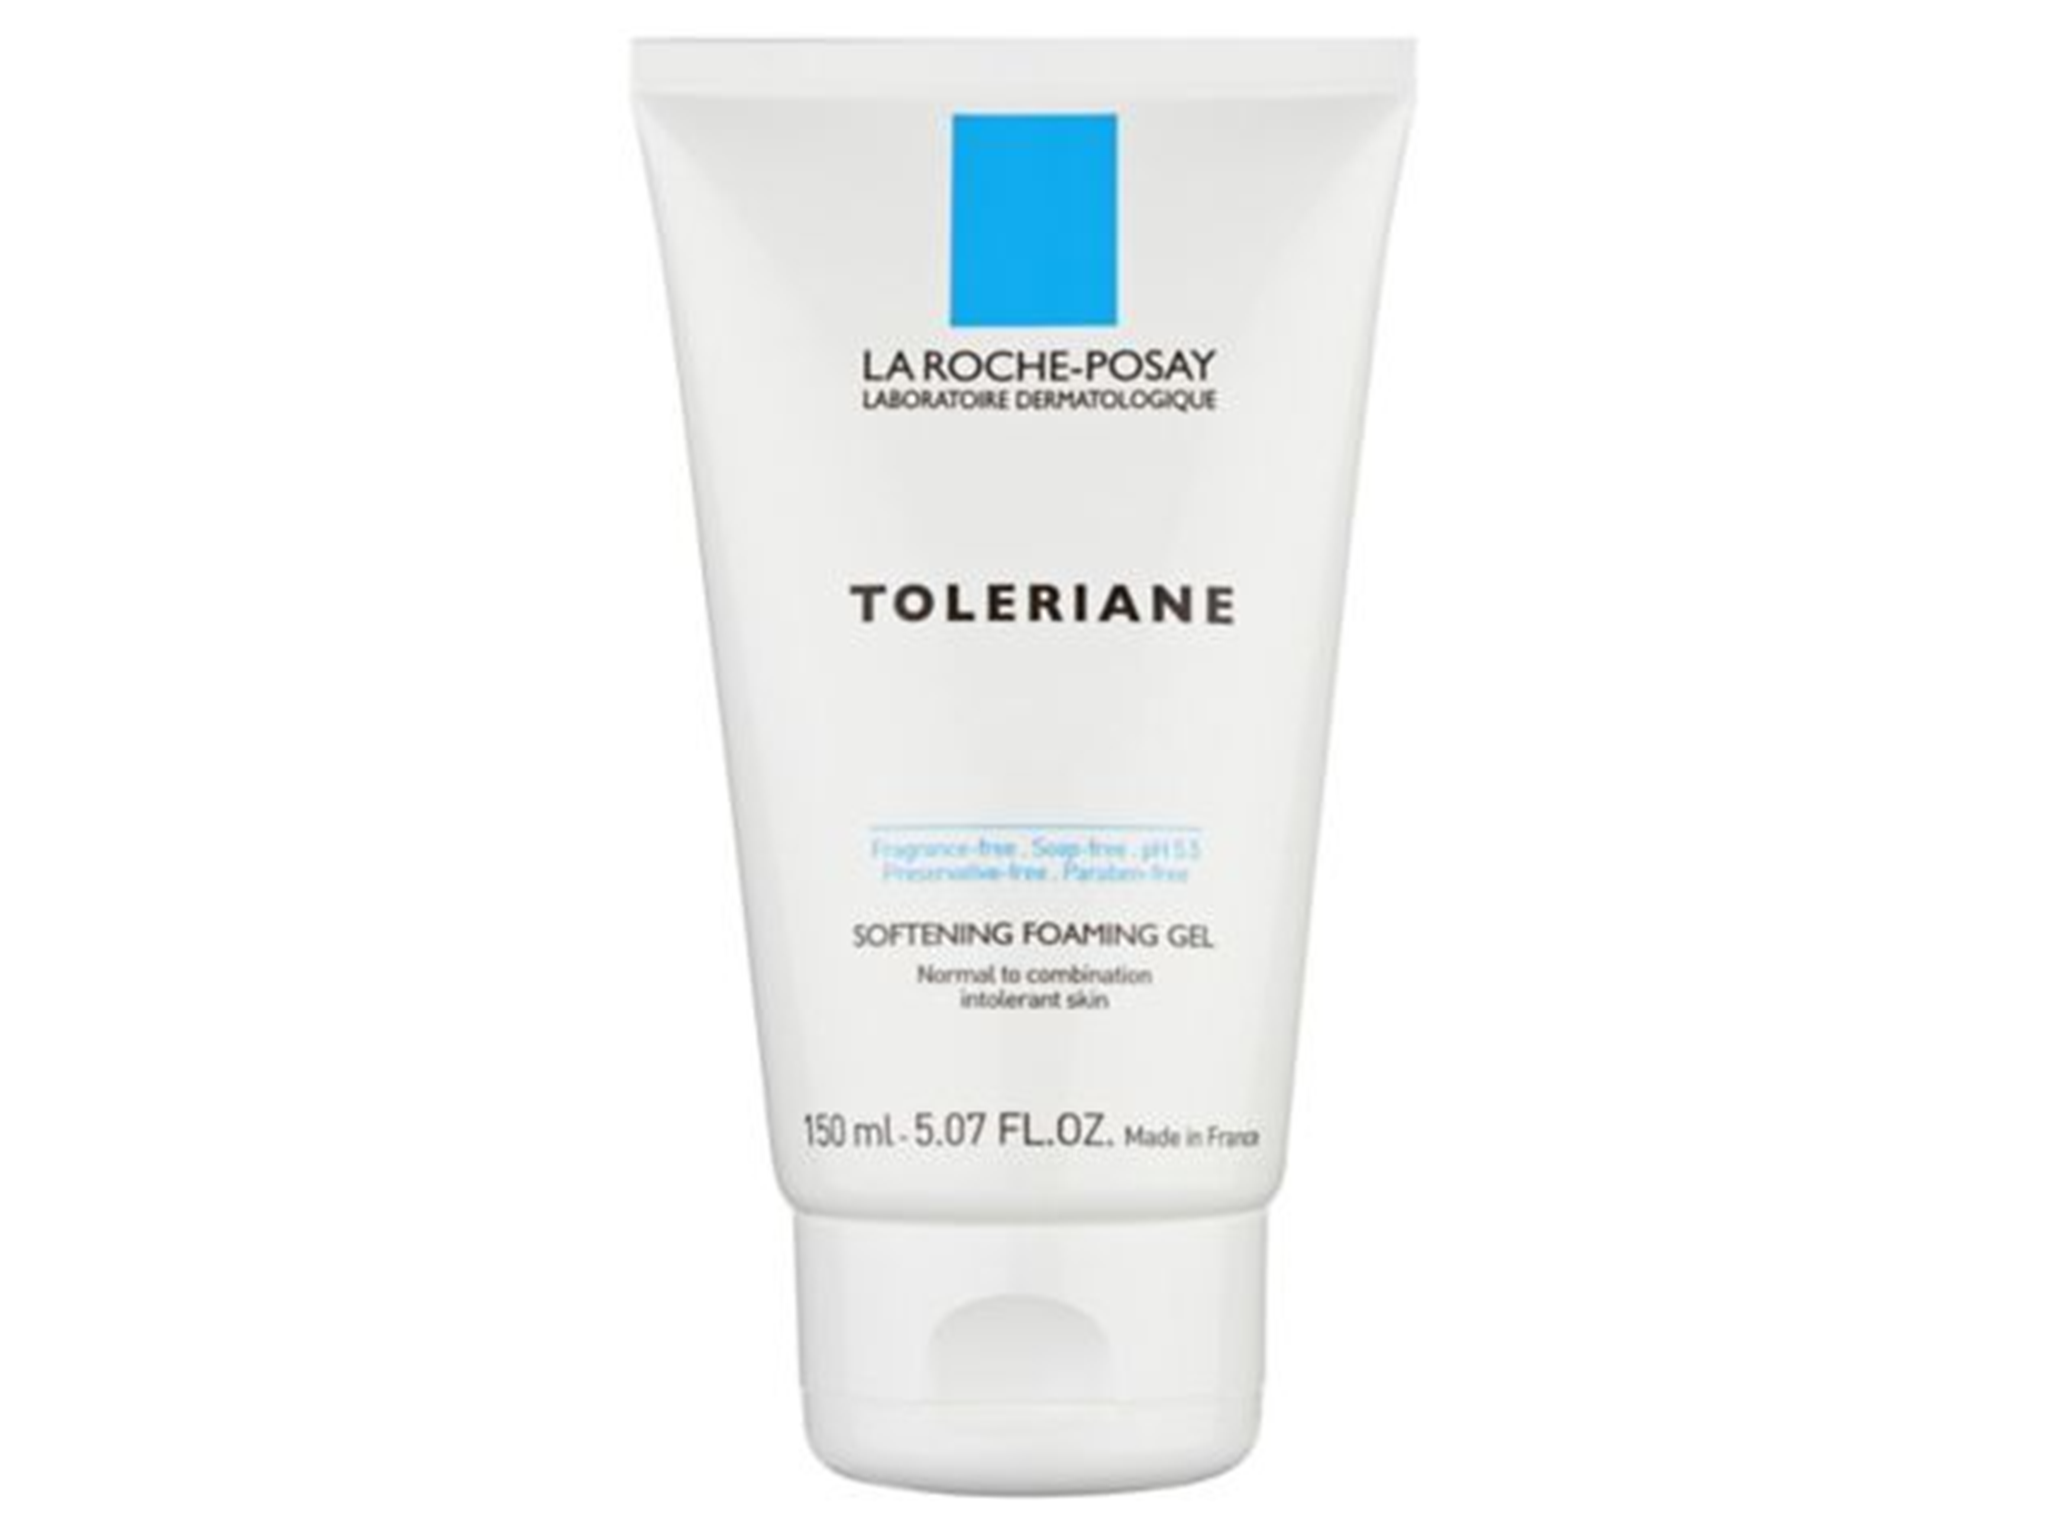 La Roche-Posay toleriane softening foaming gel wash sensitive skin